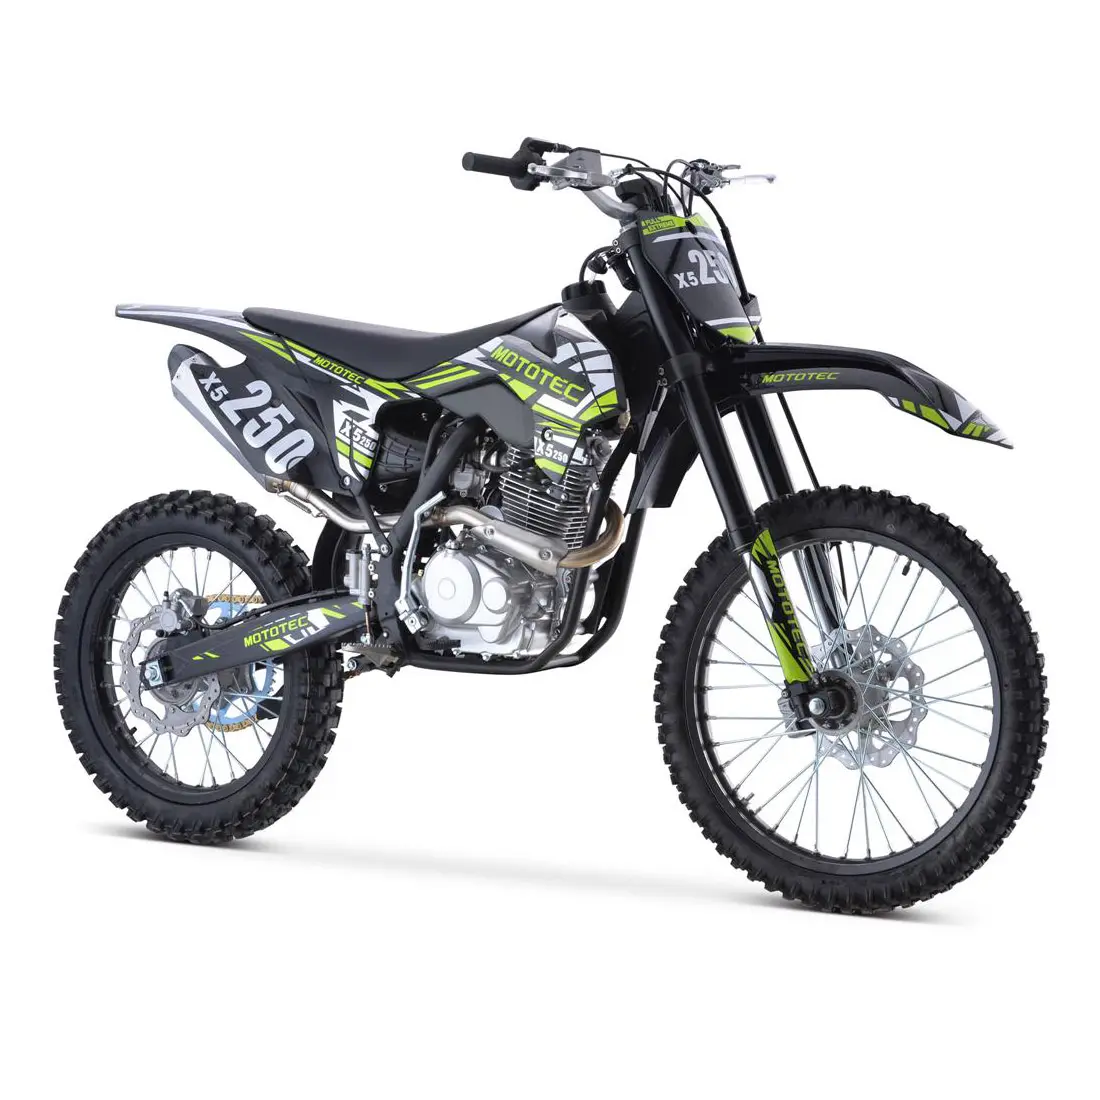 Top bán hàng X5 250cc 4-Stroke gas Dirt Bike black250cc 4-Stroke xi lanh đơn làm mát bằng không khí chất lượng cao hiệu suất và độ tin cậy